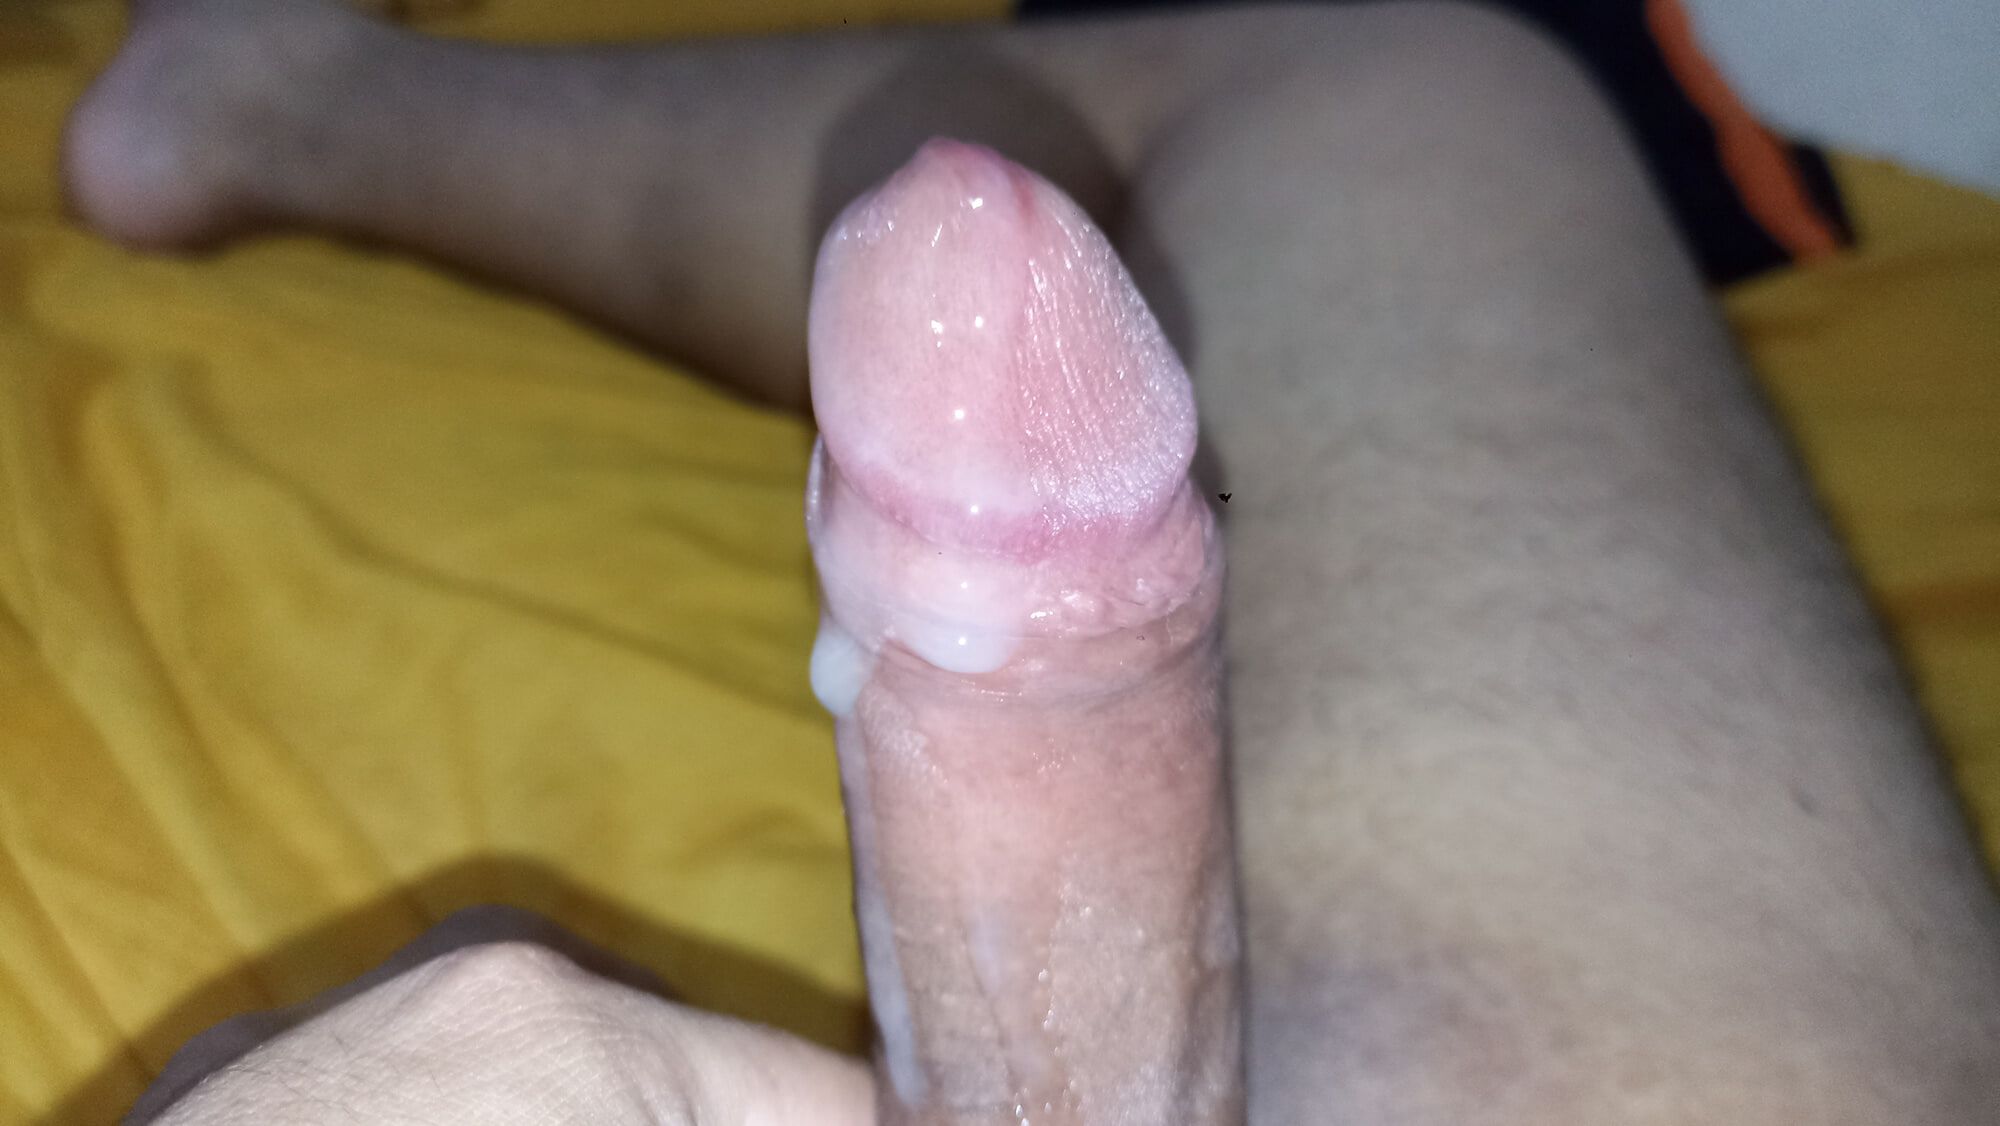 My penis ejaculating rich semen 5 #7